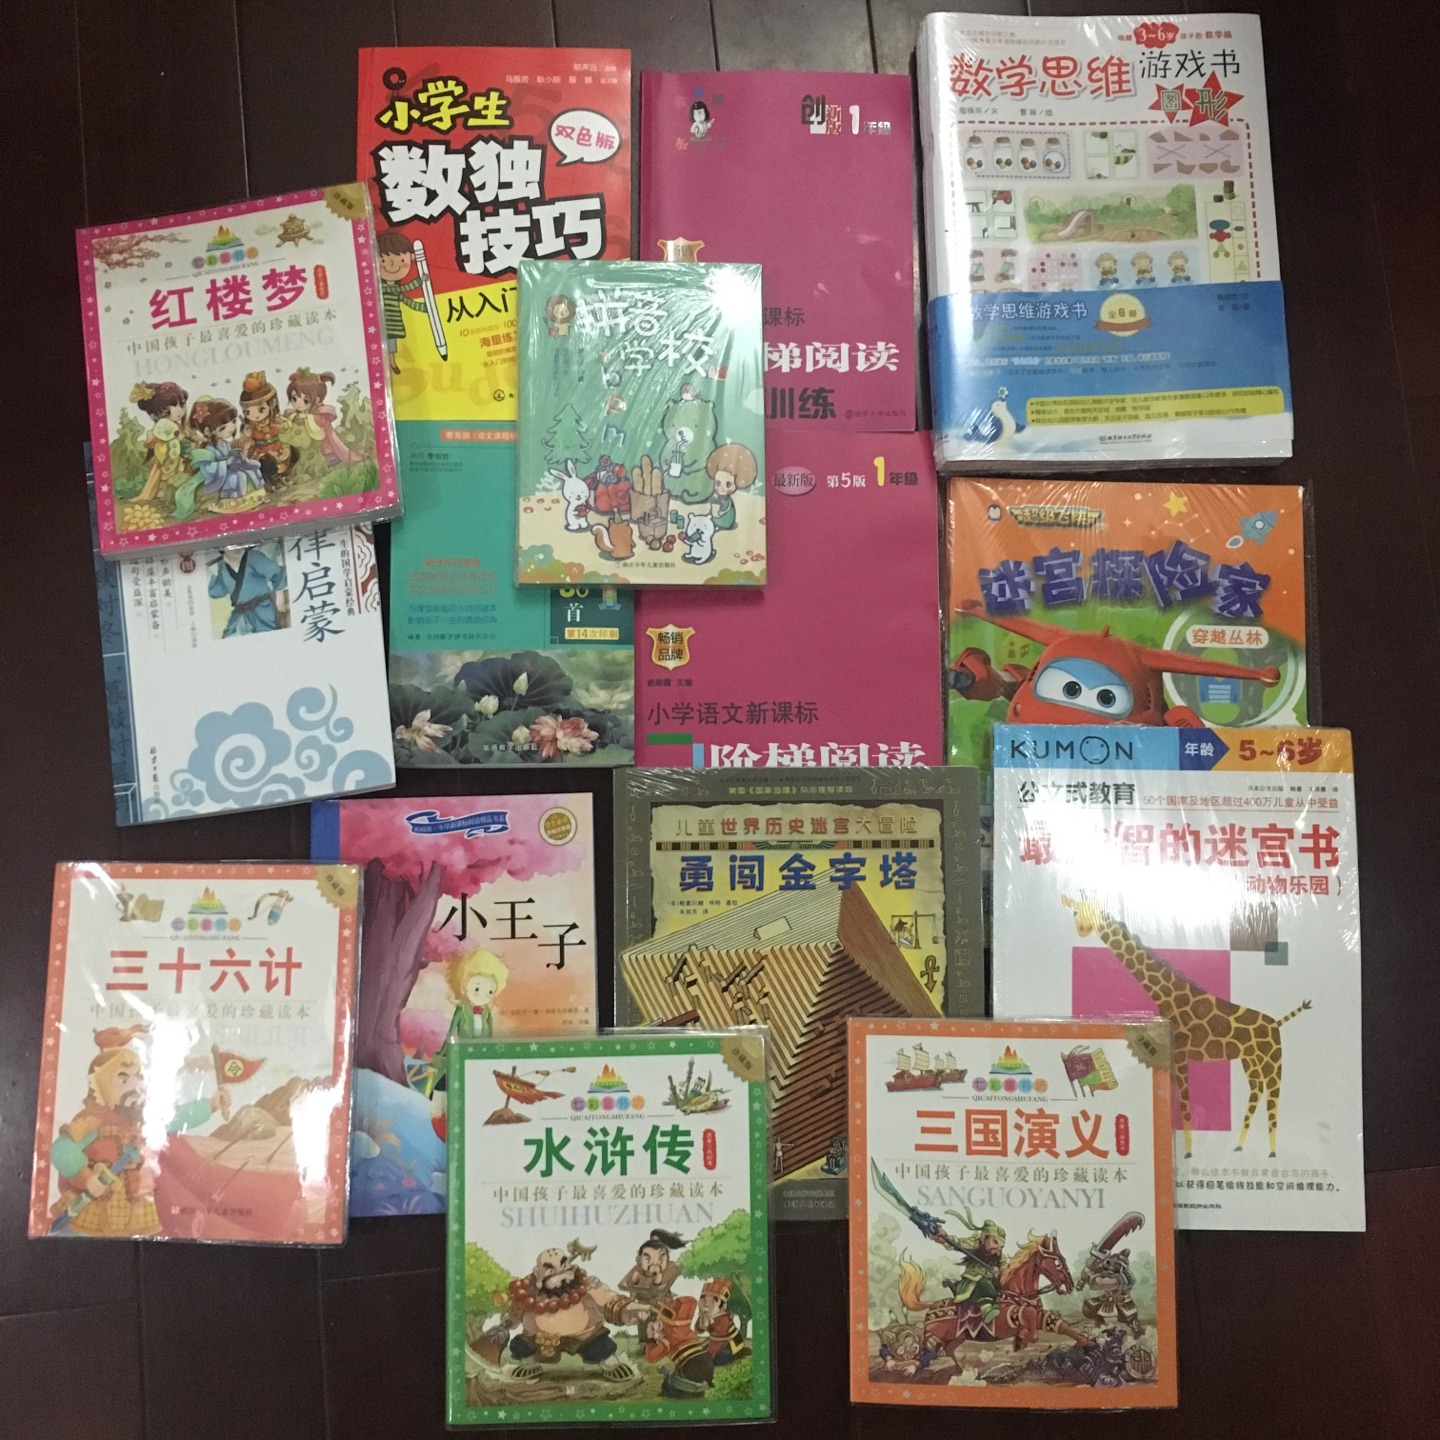 喜欢浙江儿童出版社的这套名著，绘画卡通能够吸引孩子，故事精简 挺好的，买了4大名著和36计